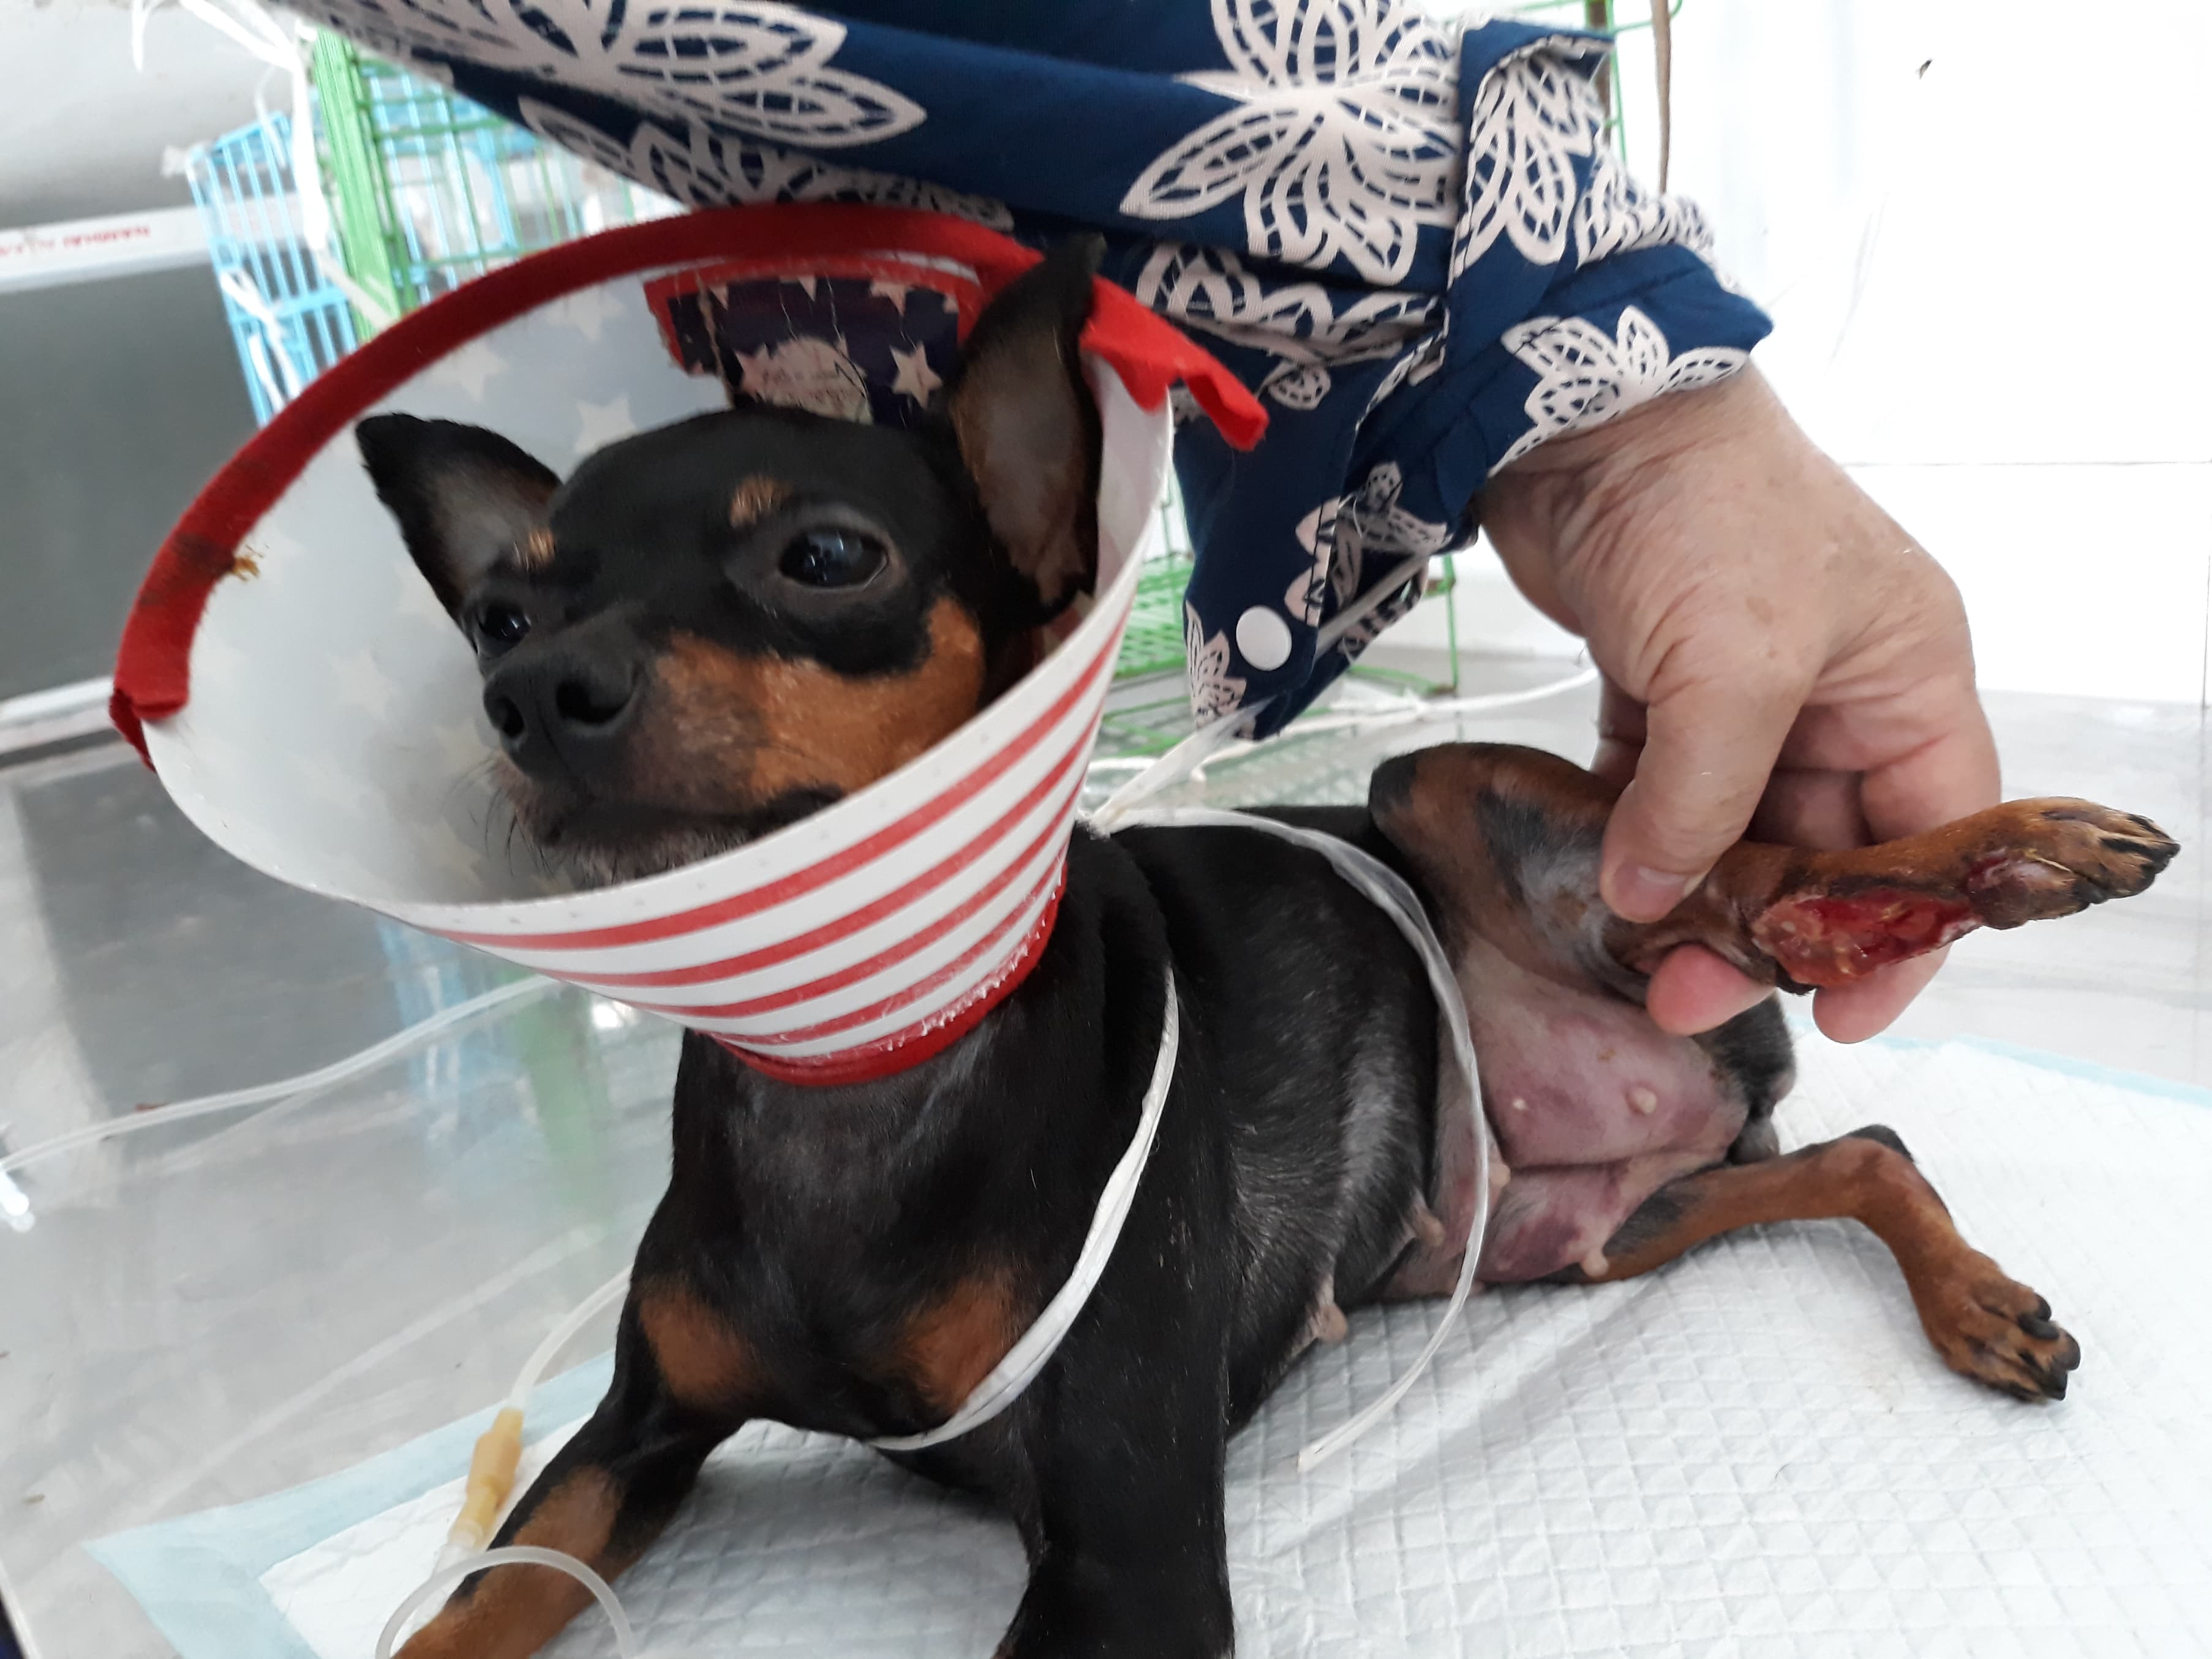 Chú chó này bị tai nạn được chủ nhân đưa vào viện điều trị